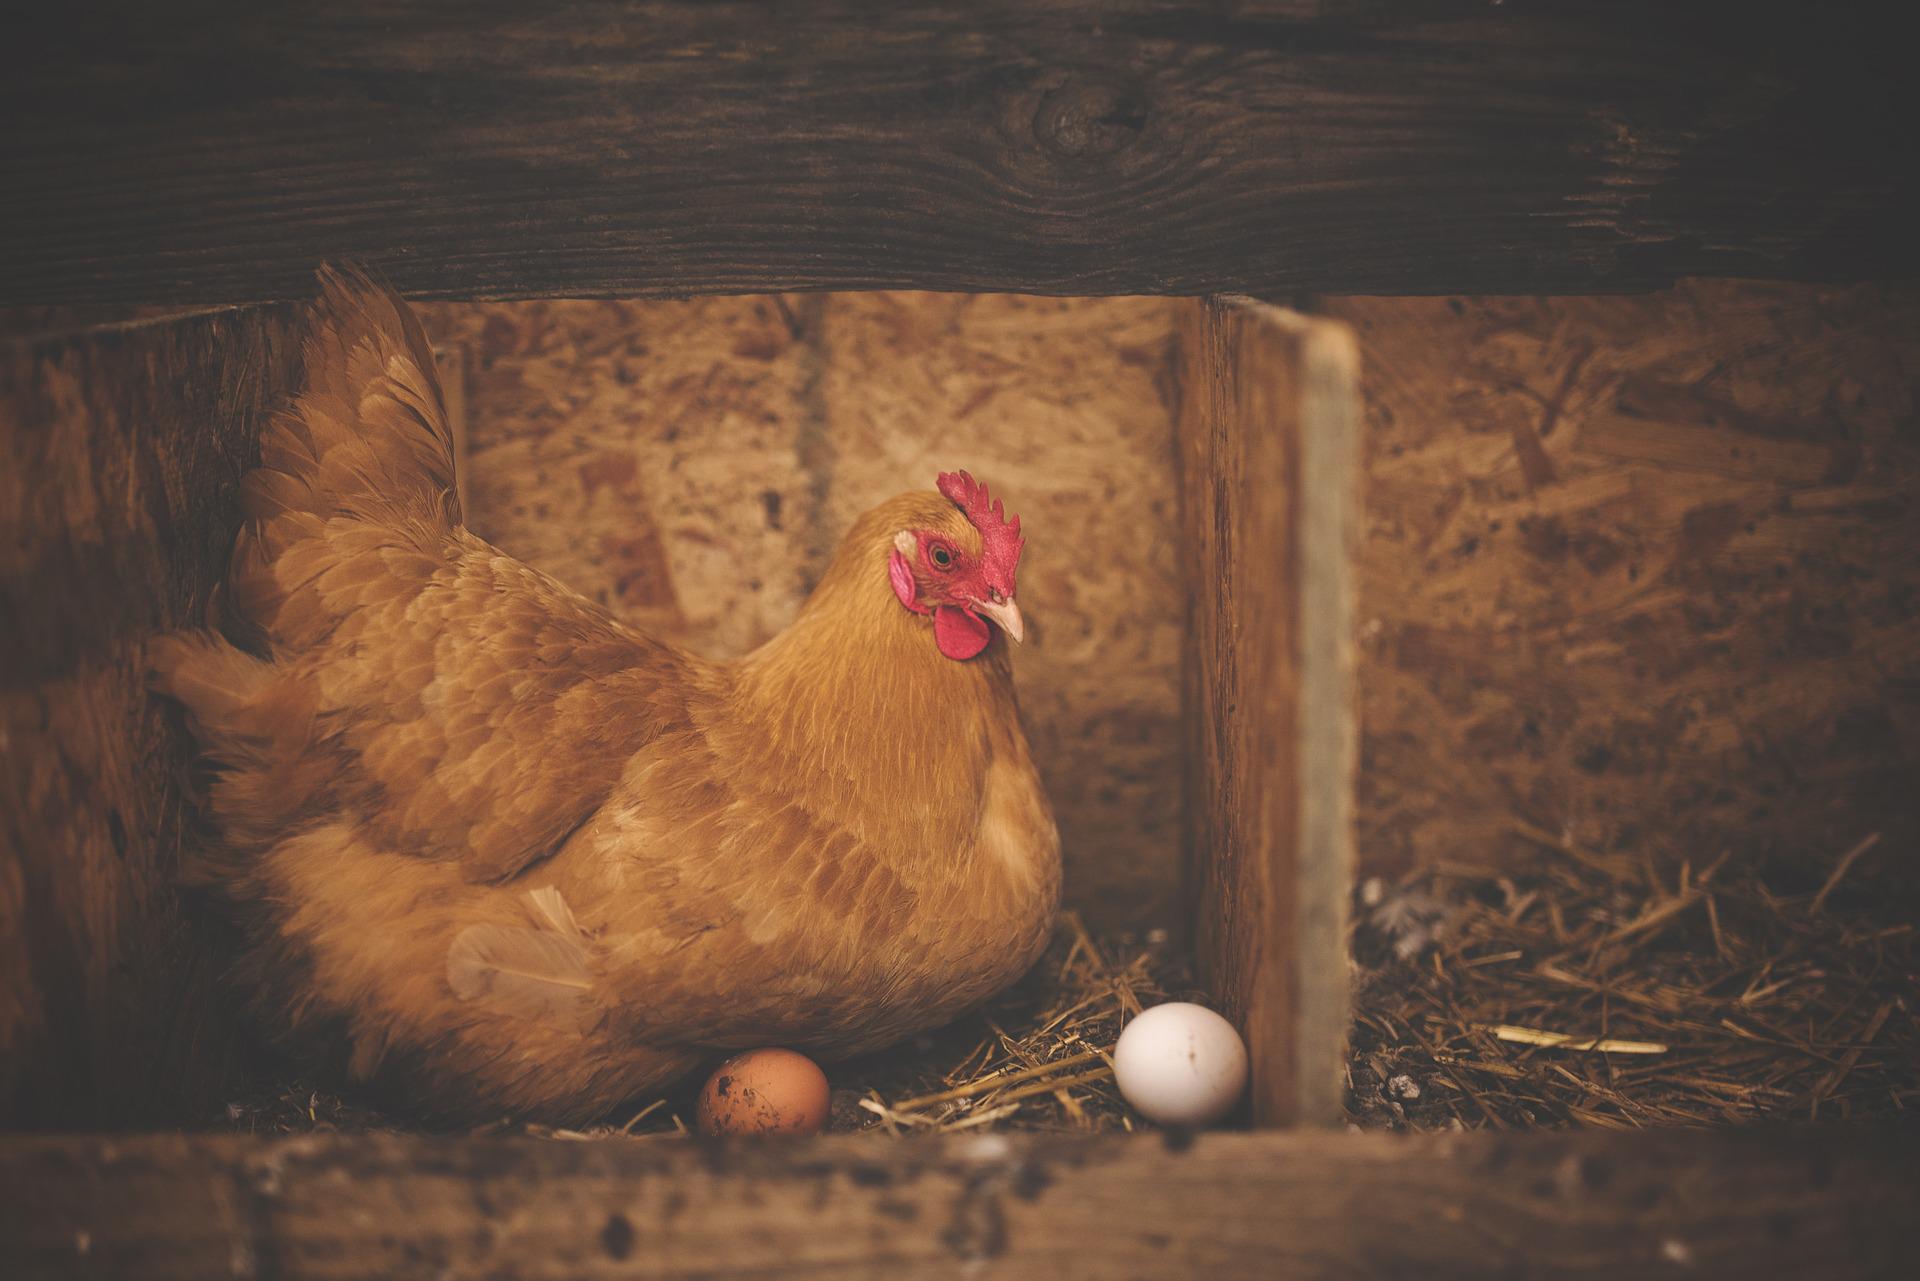 Kana munimassa